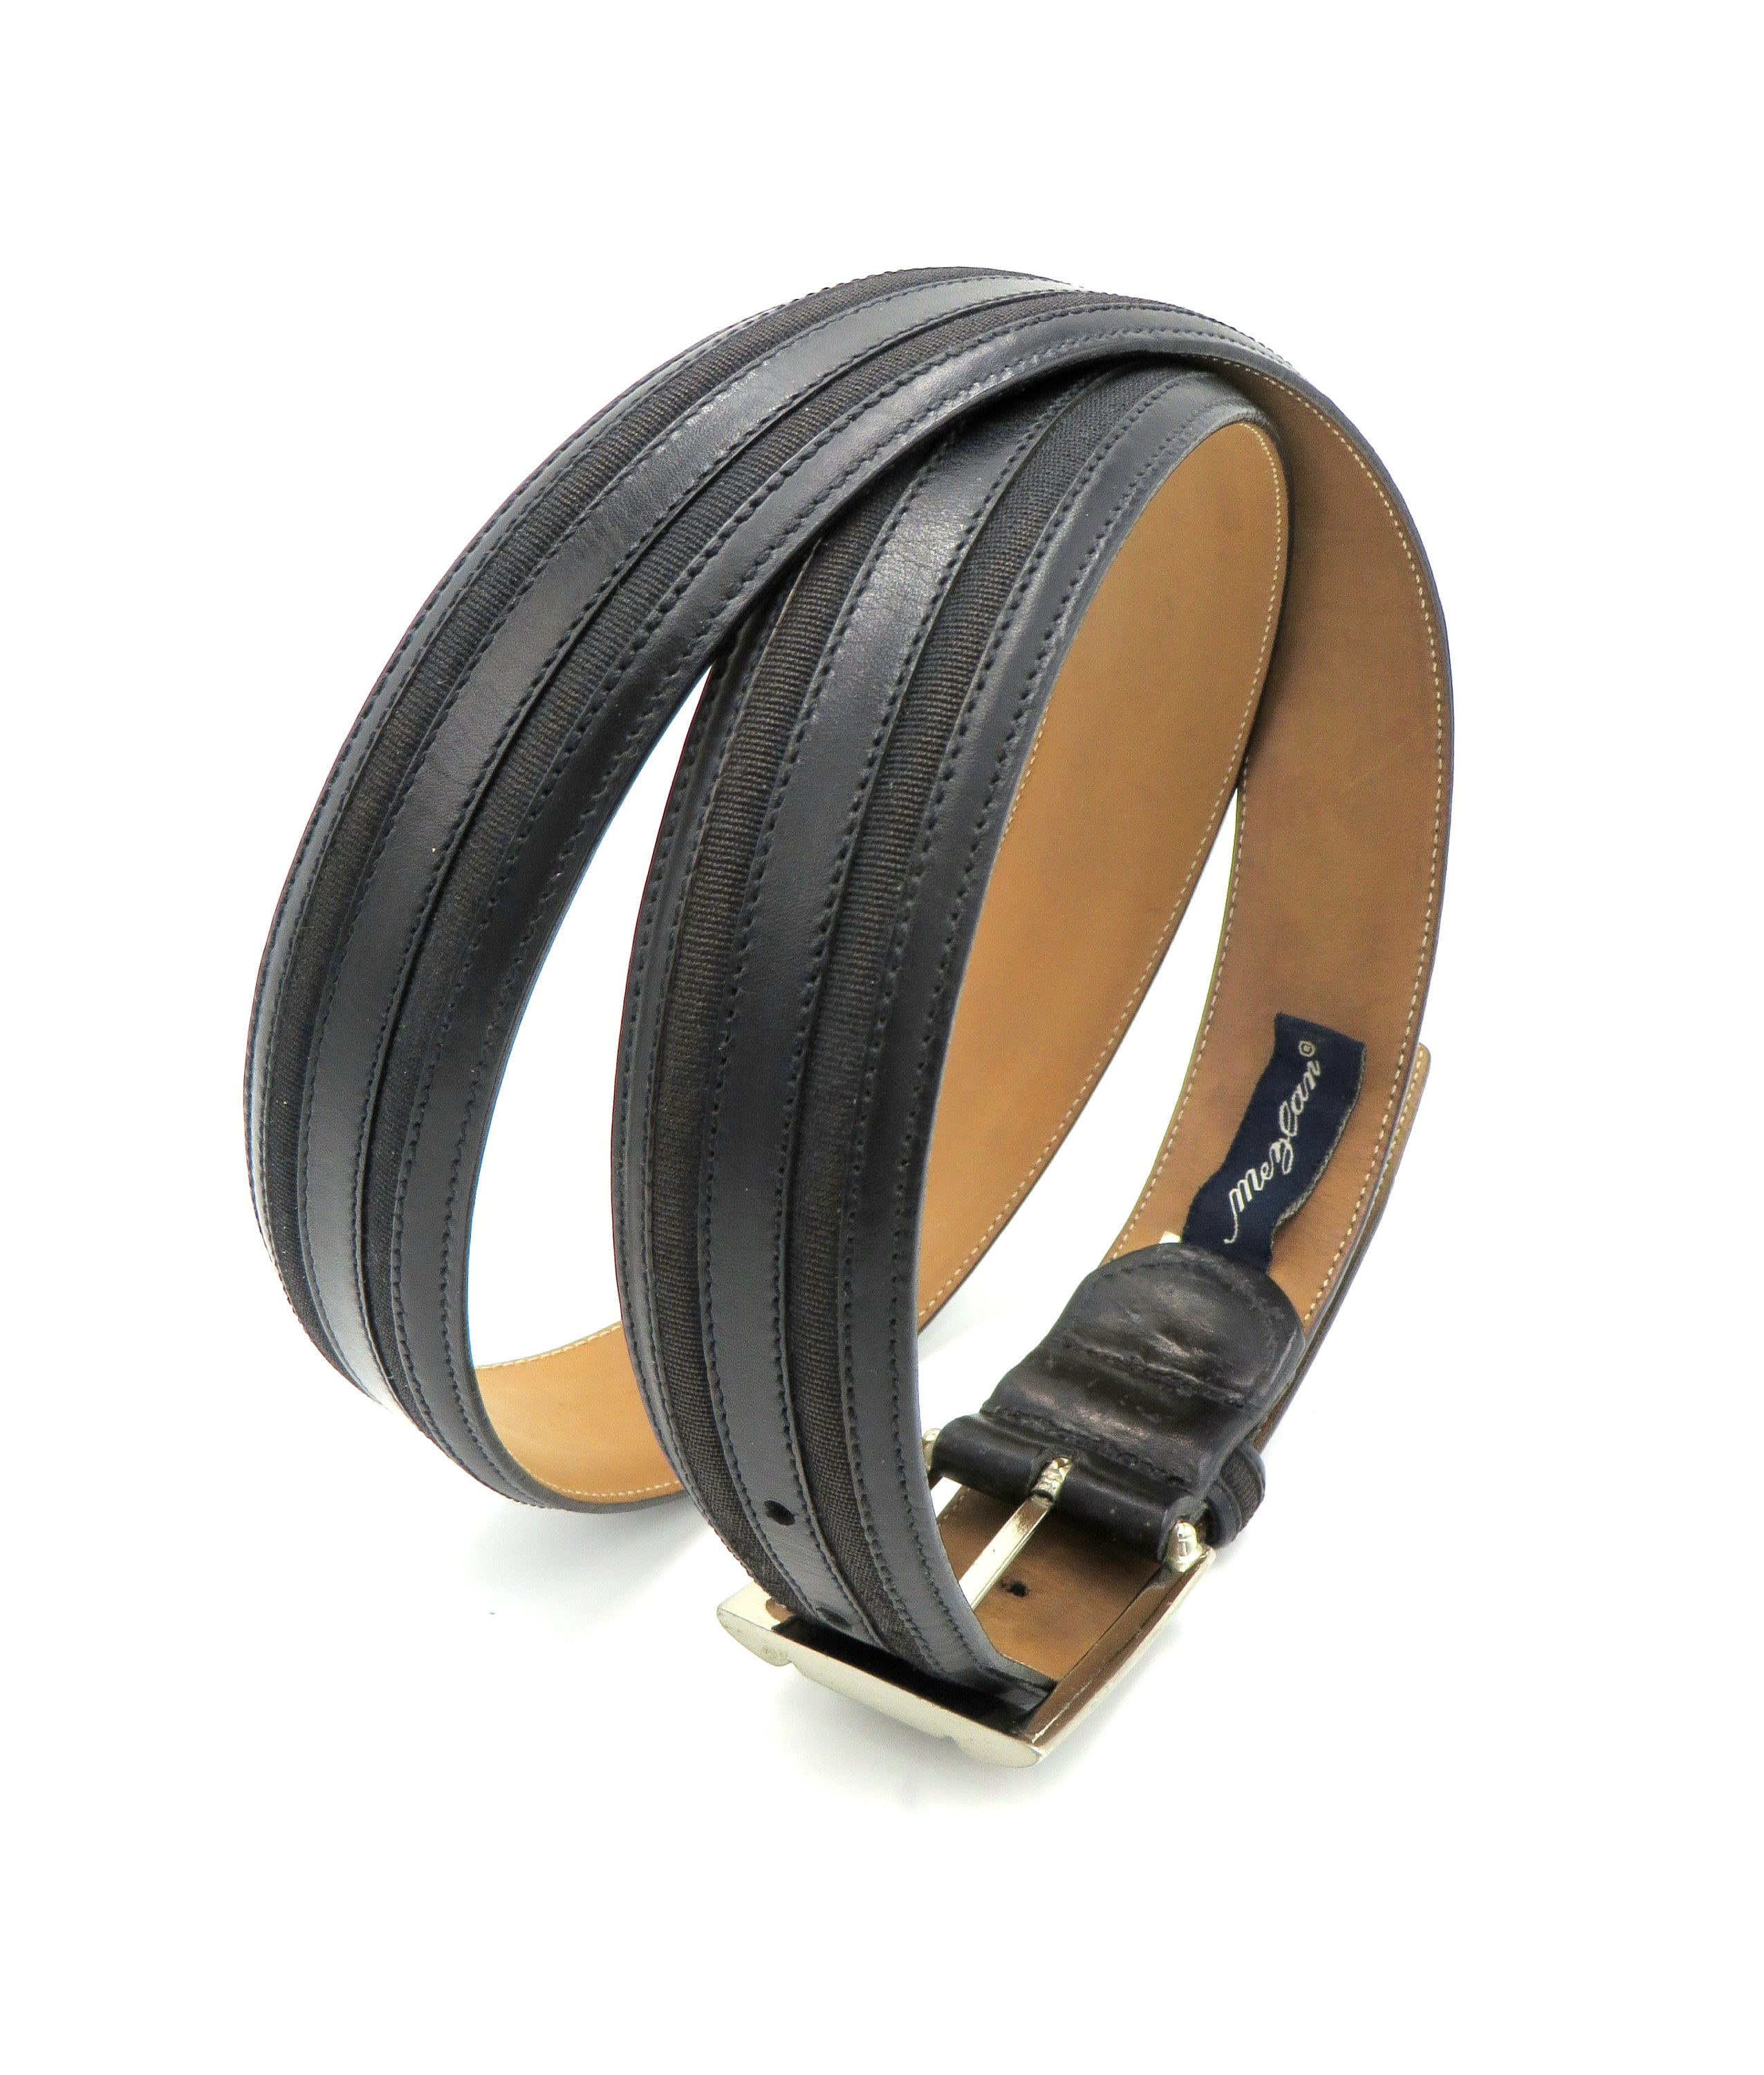 Vintage MEZLAN Fine Leather Black Belt Made in Spain Inset Top 